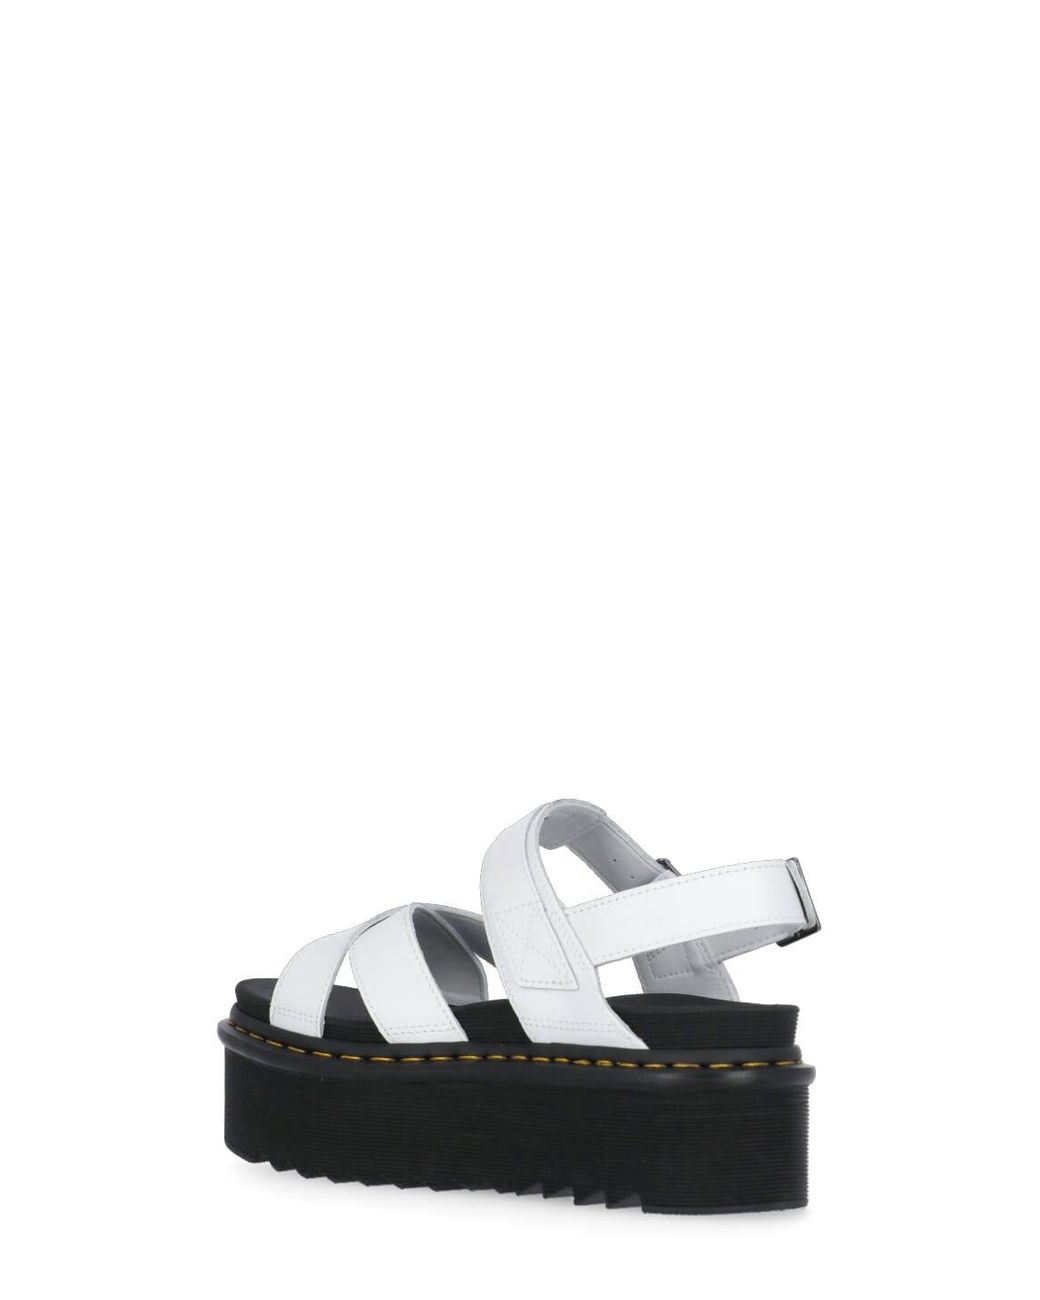 Martens Quad Platform Sandals in White Lyst